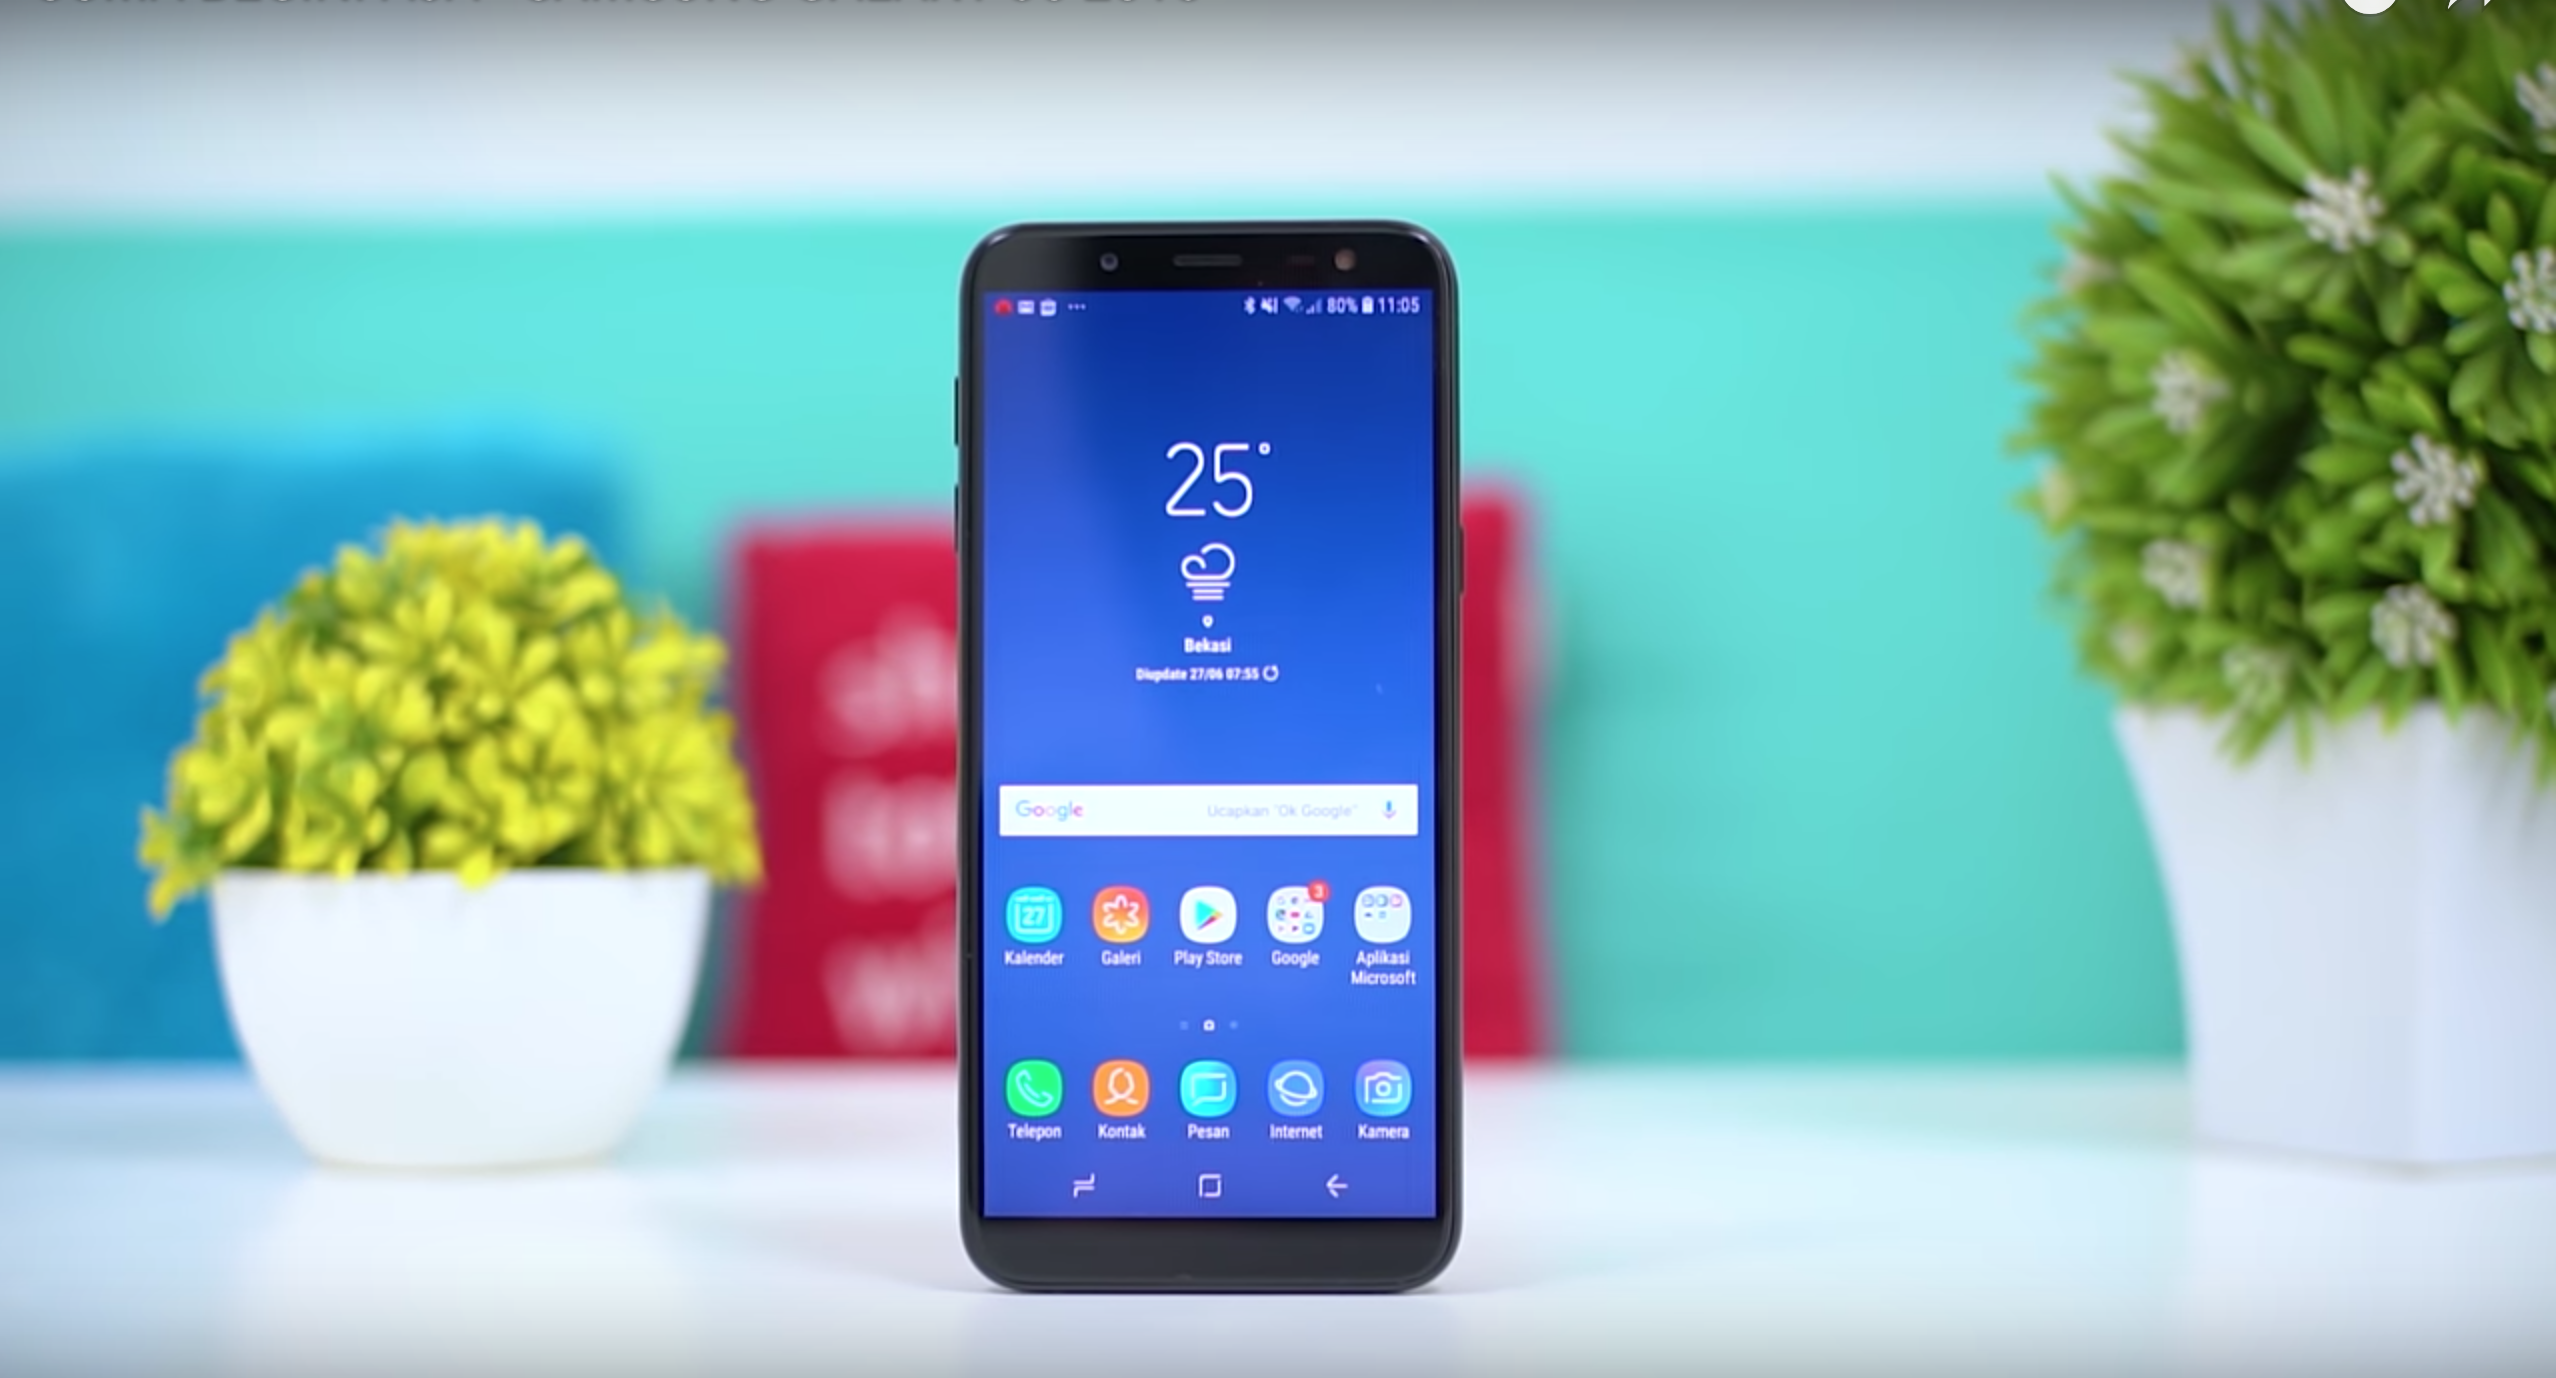 Smartphone Samsung Galaxy J6 (2018) - fordele og ulemper